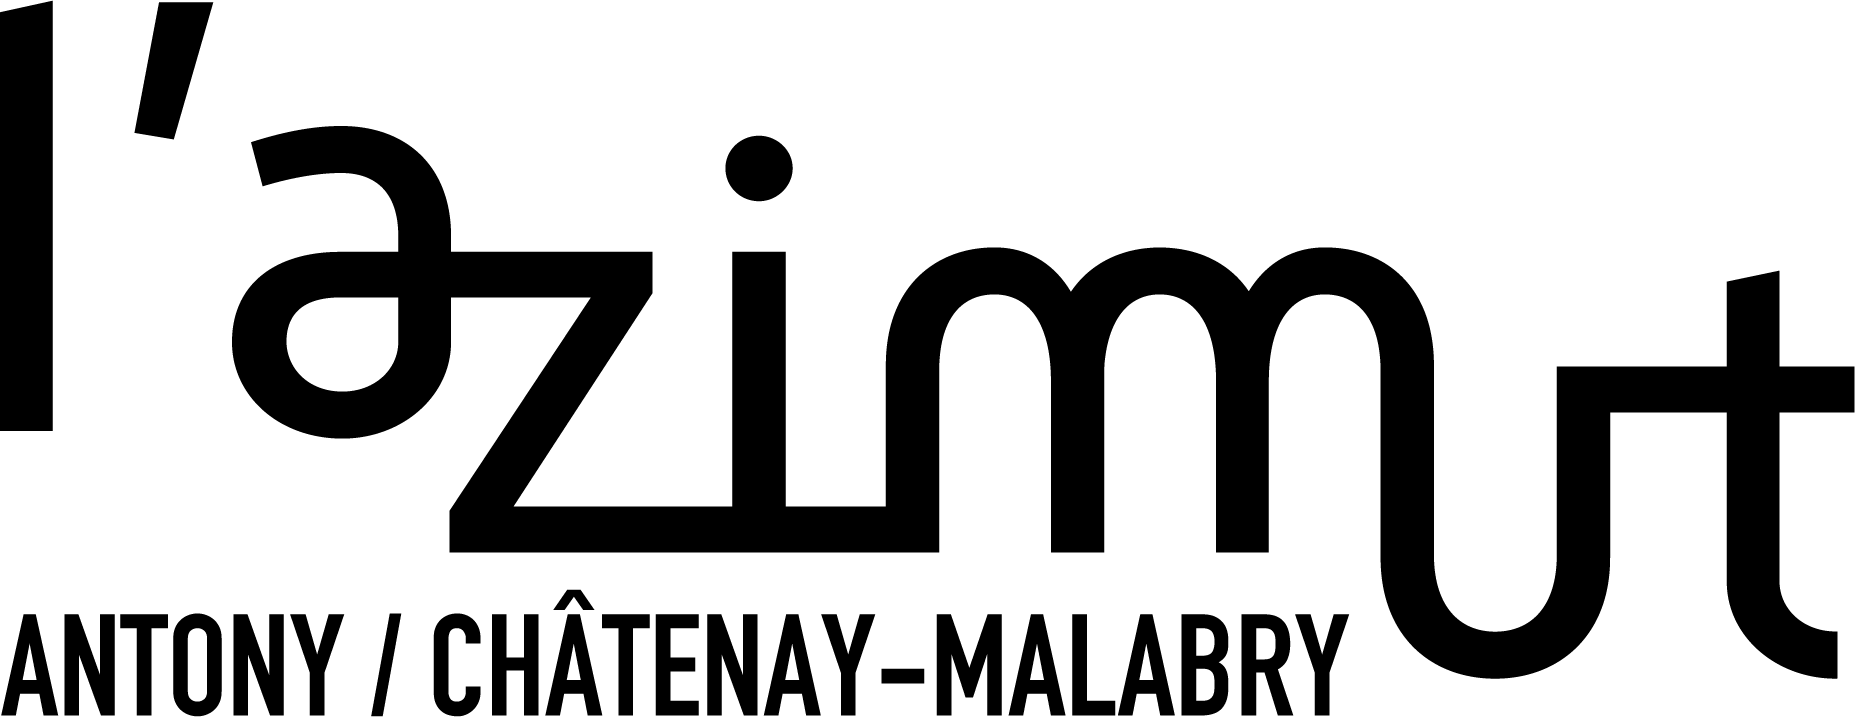 Logo AZIMUT + villes noir PNG